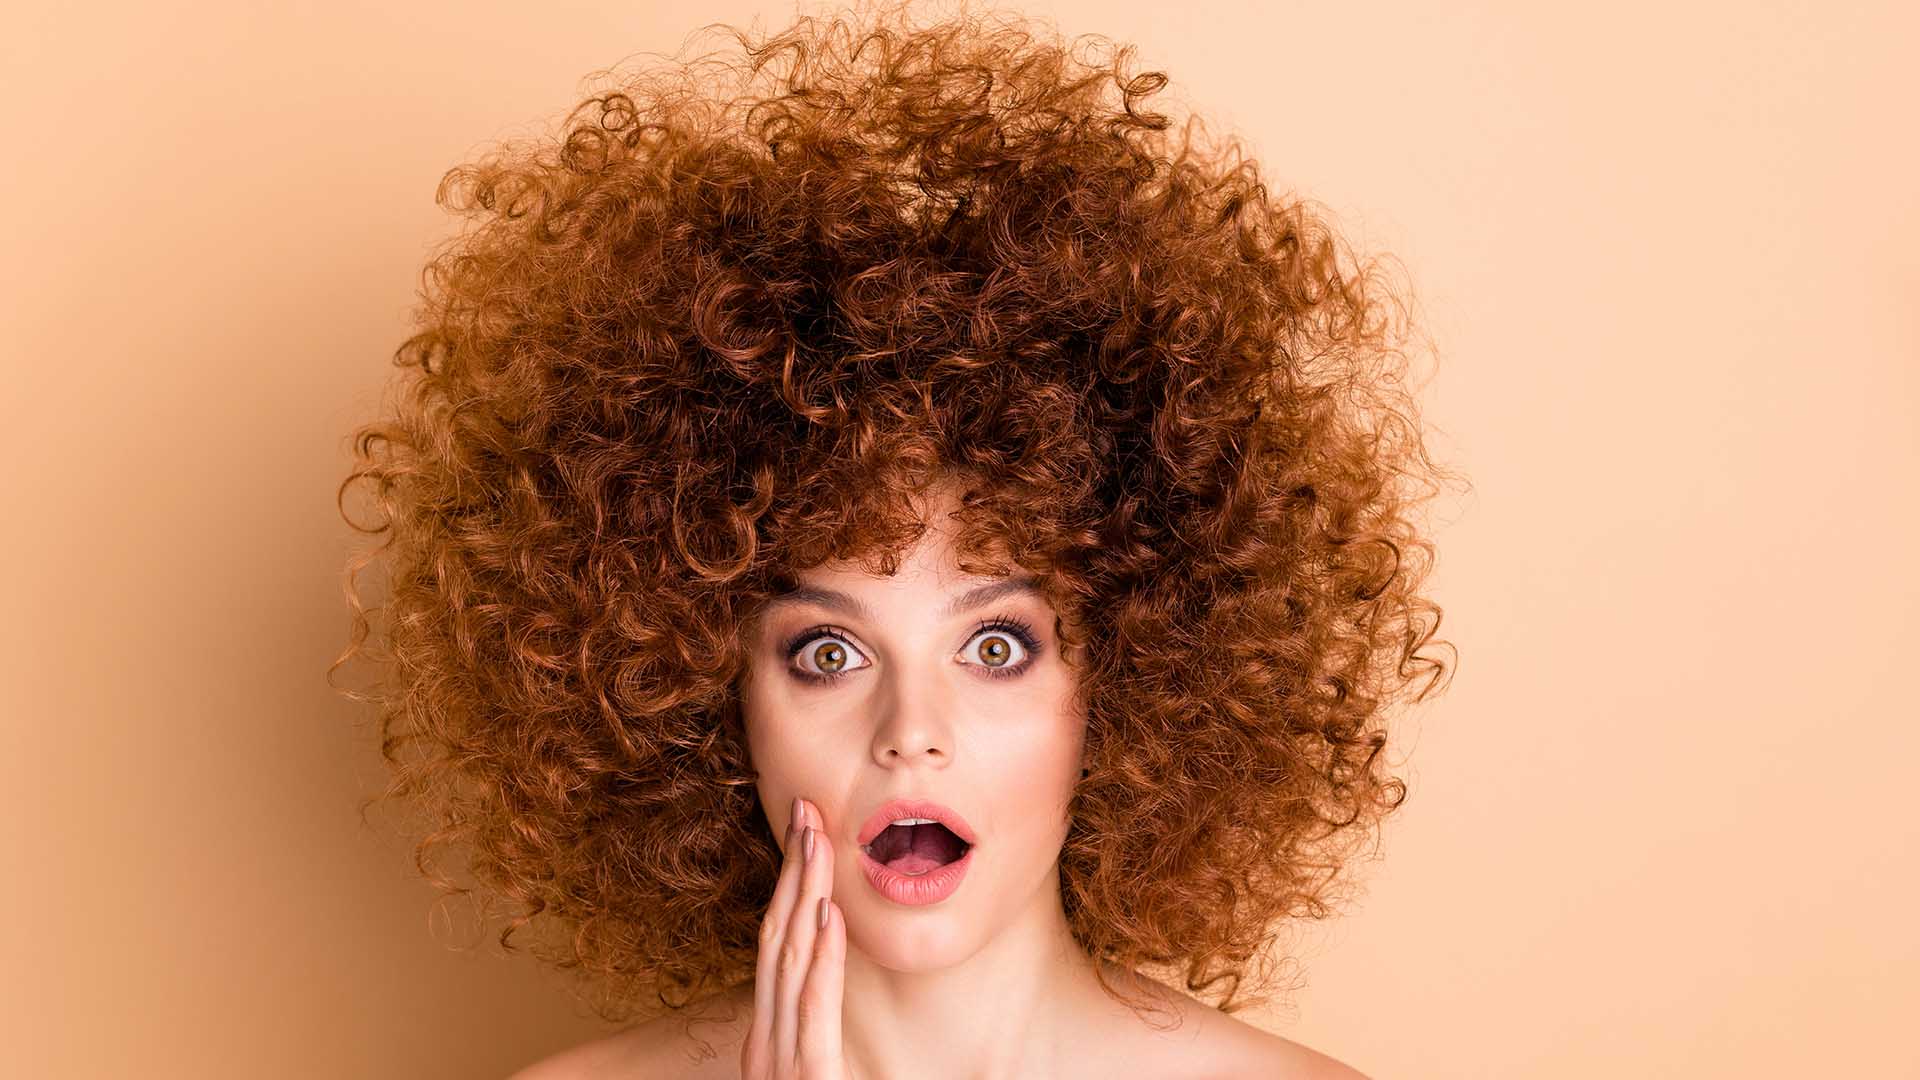 Hai la fortuna di avere i capelli ricci ma non sai come domarli? Ecco cinque consigli per evitare l’effetto crespo e ottenere morbidezza.